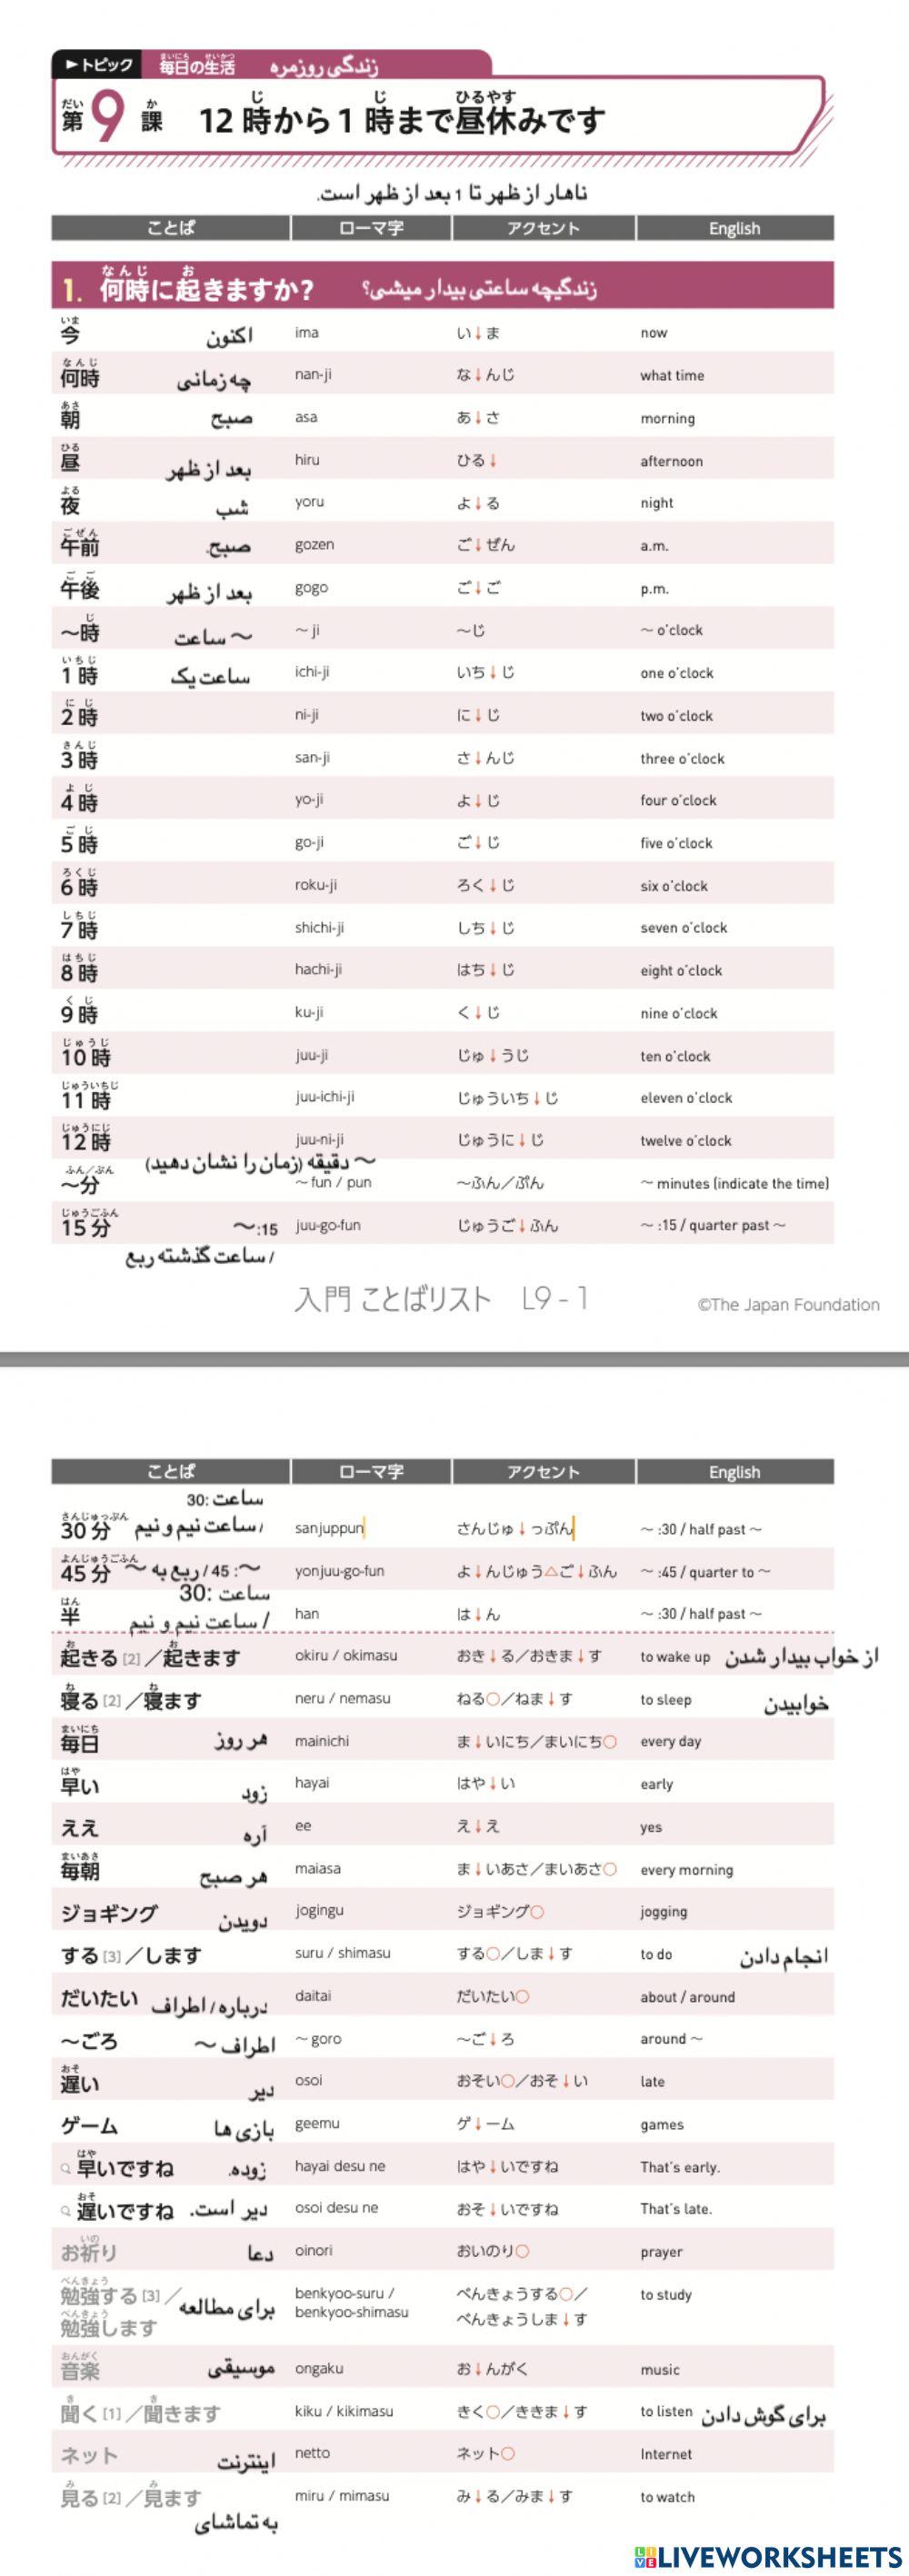 いろどり入門ことばリストL9-S1 Persian language